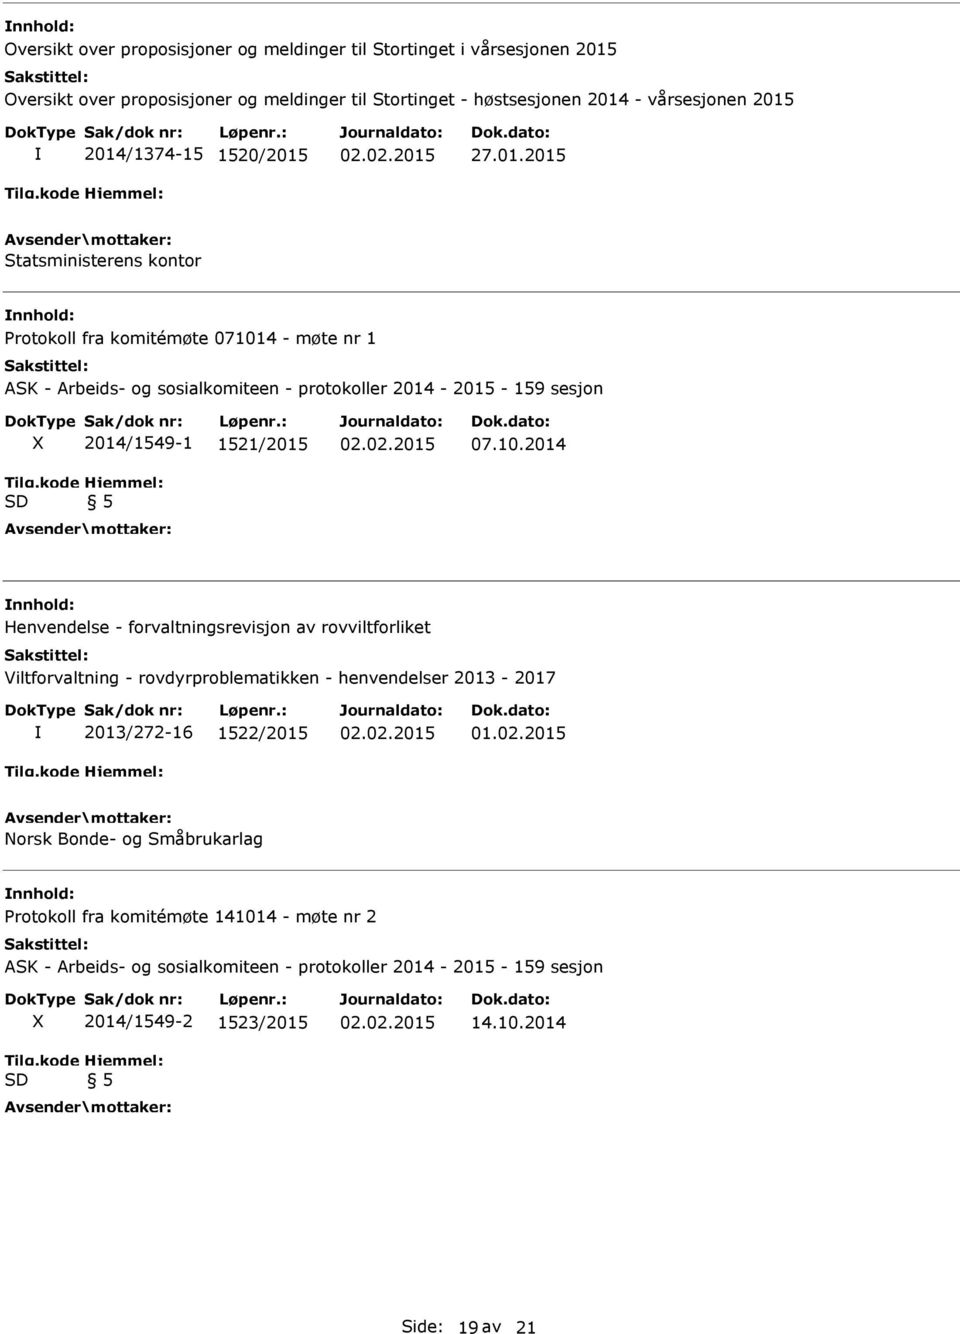 10.2014 nnhold: Henvendelse - forvaltningsrevisjon av rovviltforliket Viltforvaltning - rovdyrproblematikken - henvendelser 2013-2017 2013/272-16 1522/2015 01.02.